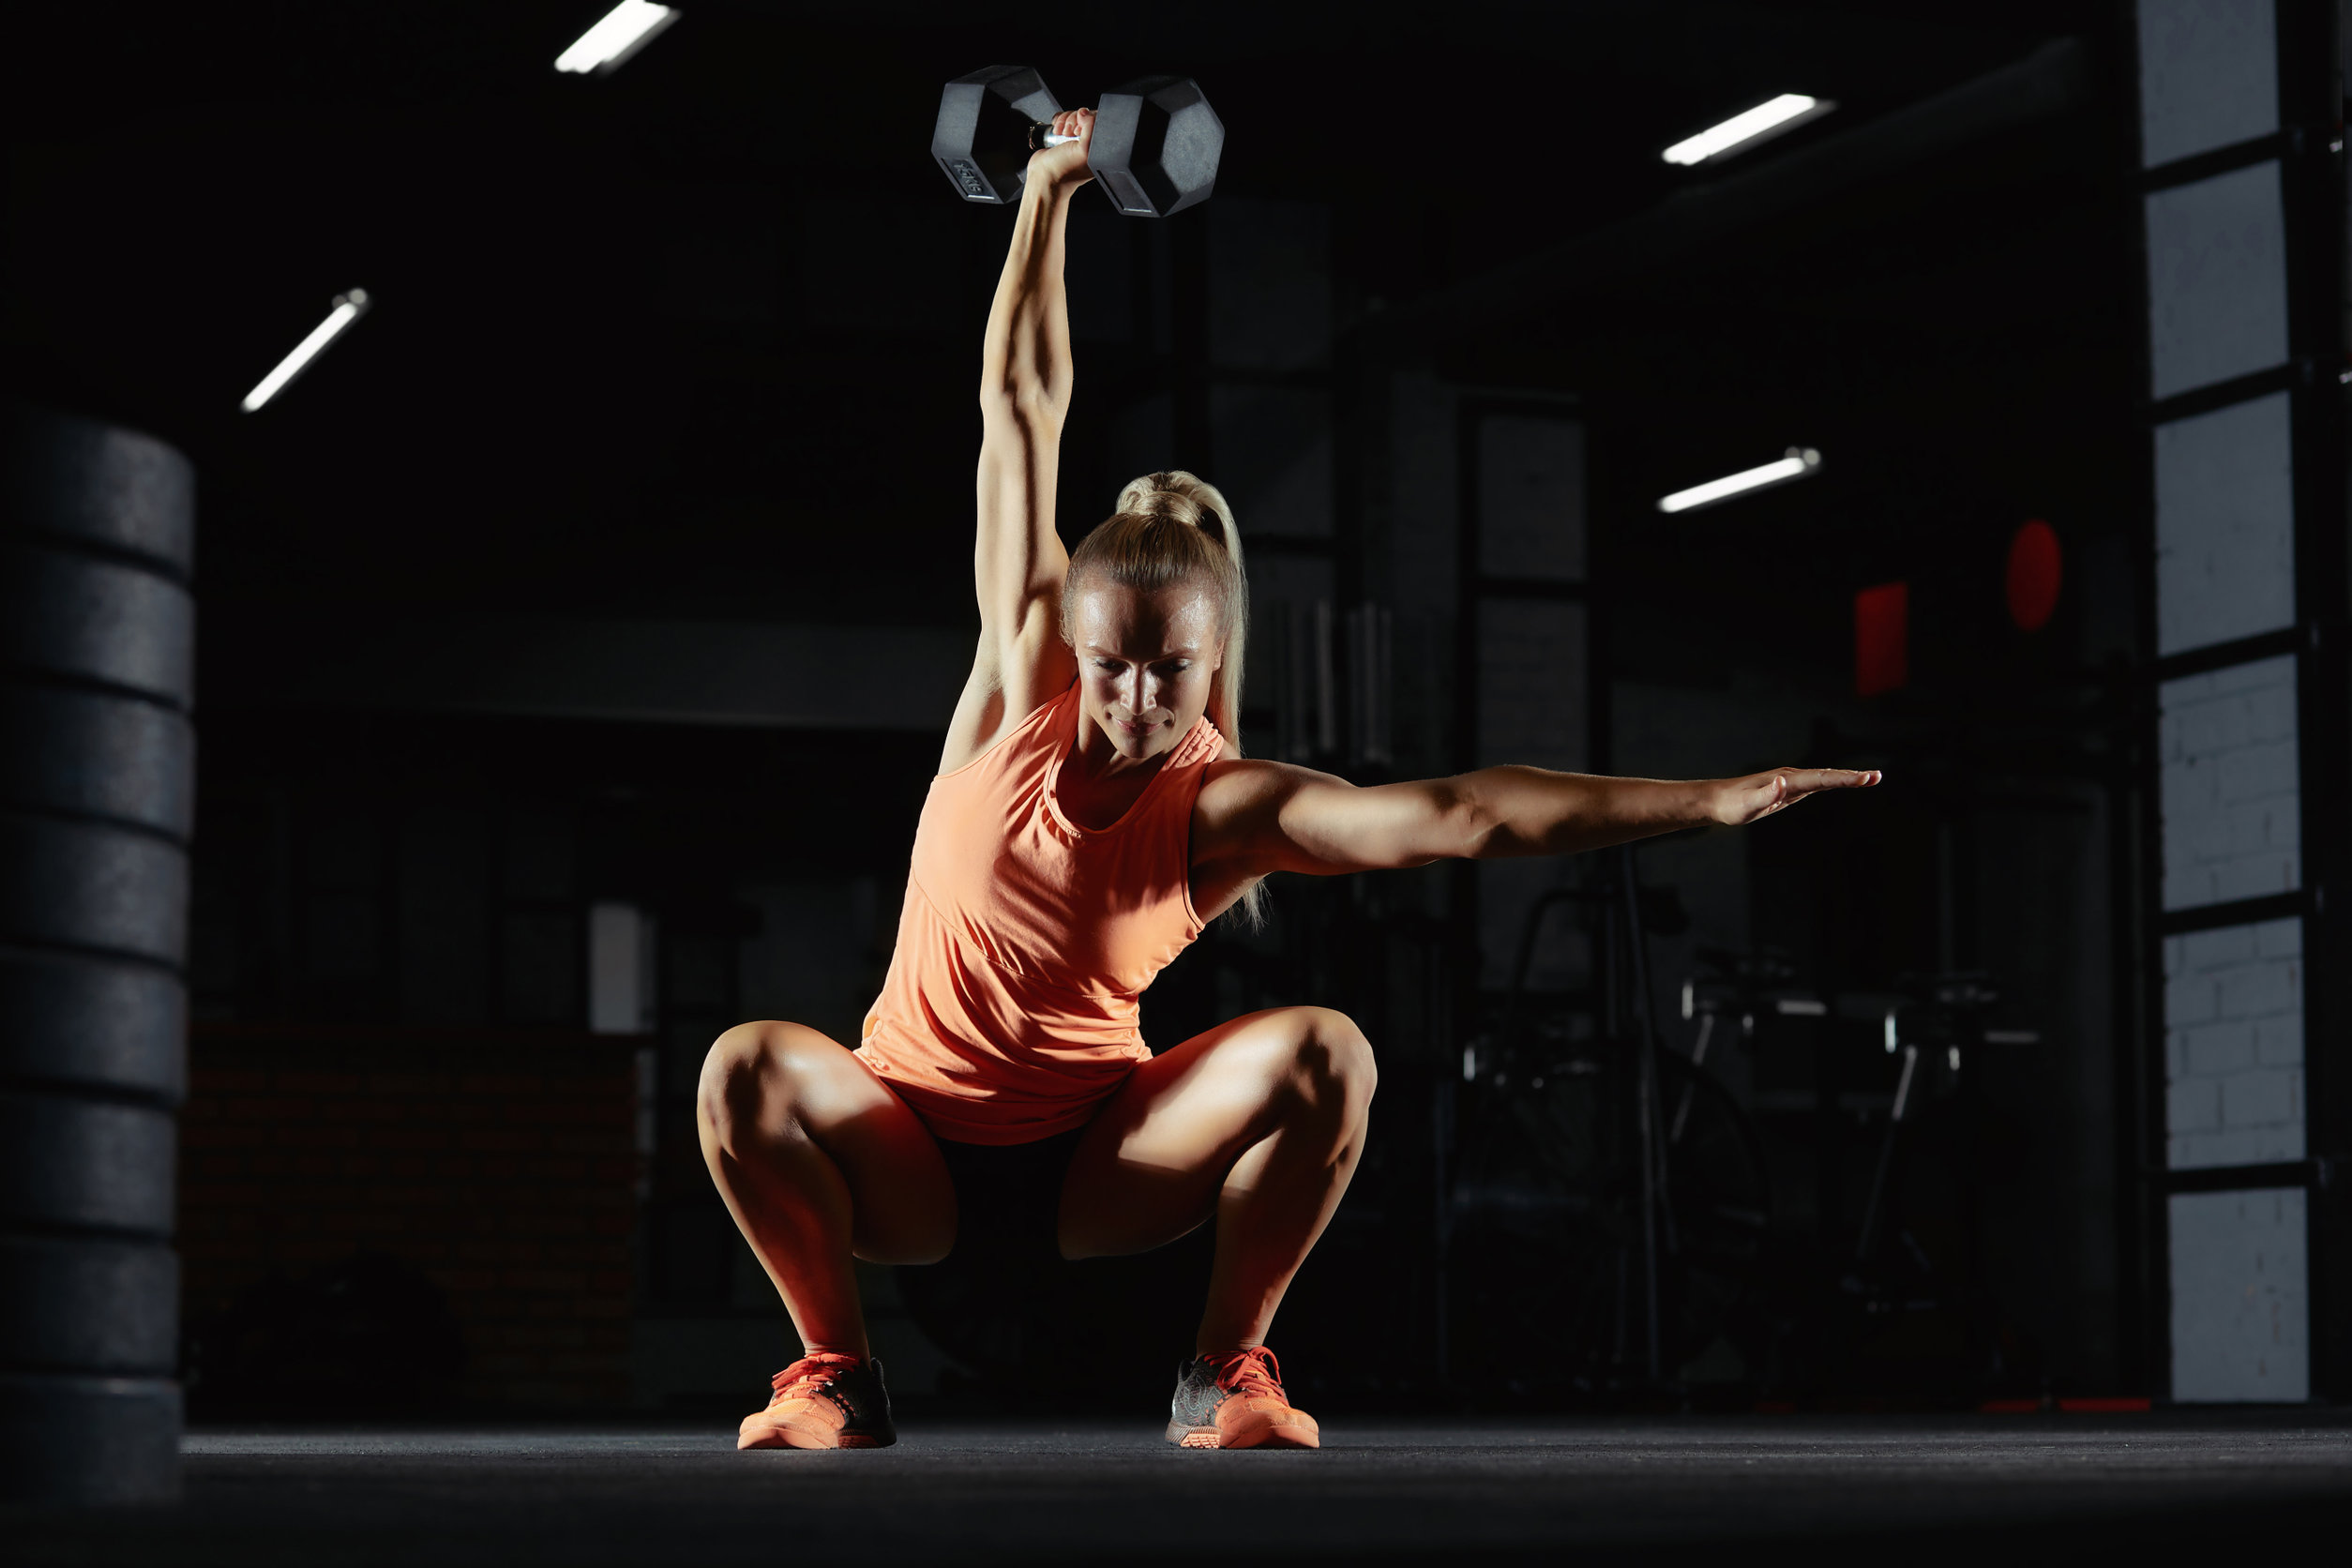 Female crossfit athlete exercising